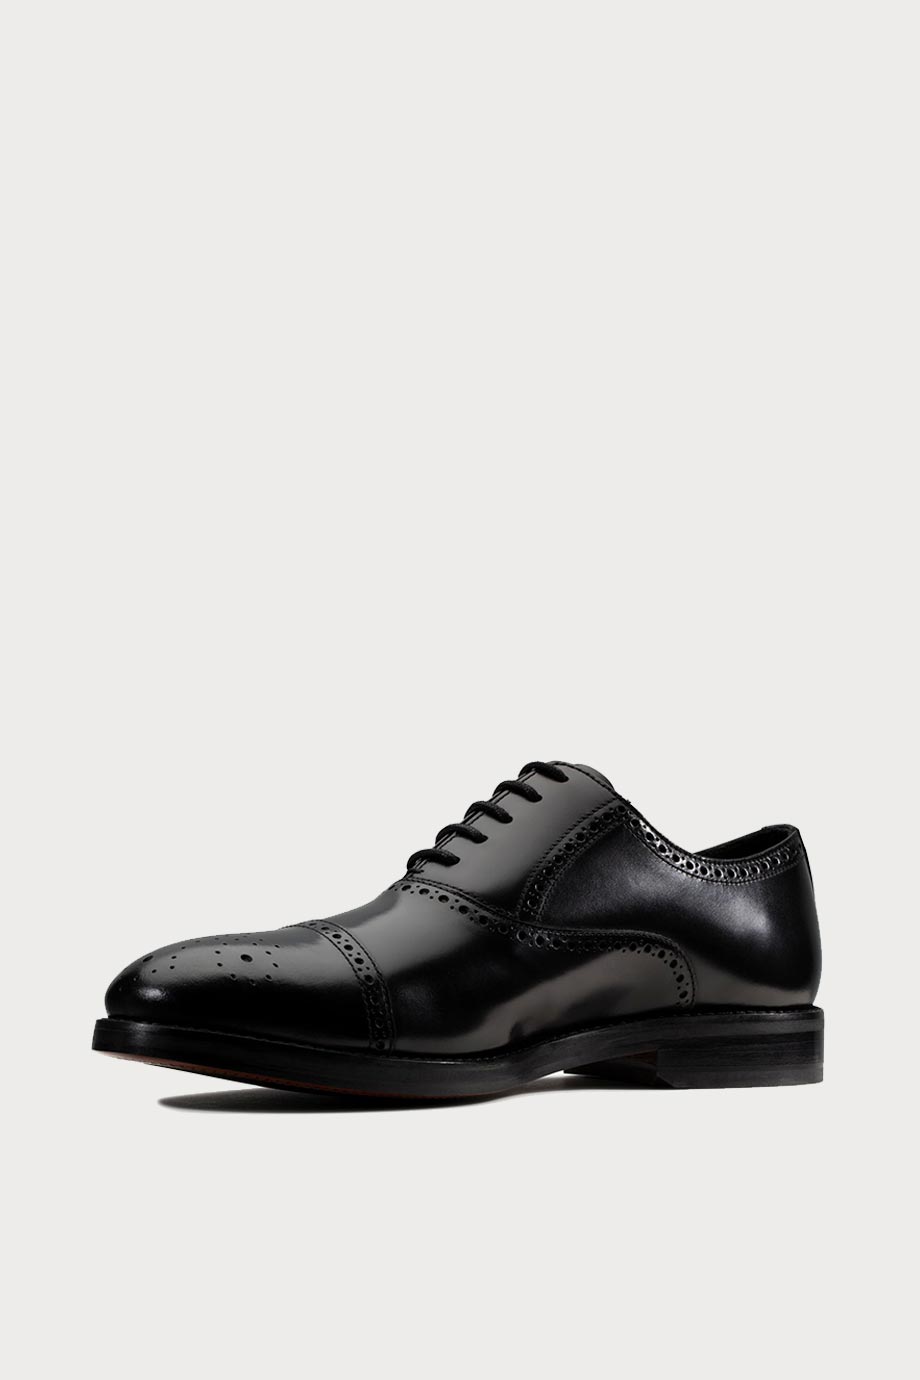 spiridoula metheniti shoes xalkida p oliver limit black leather clarks 4